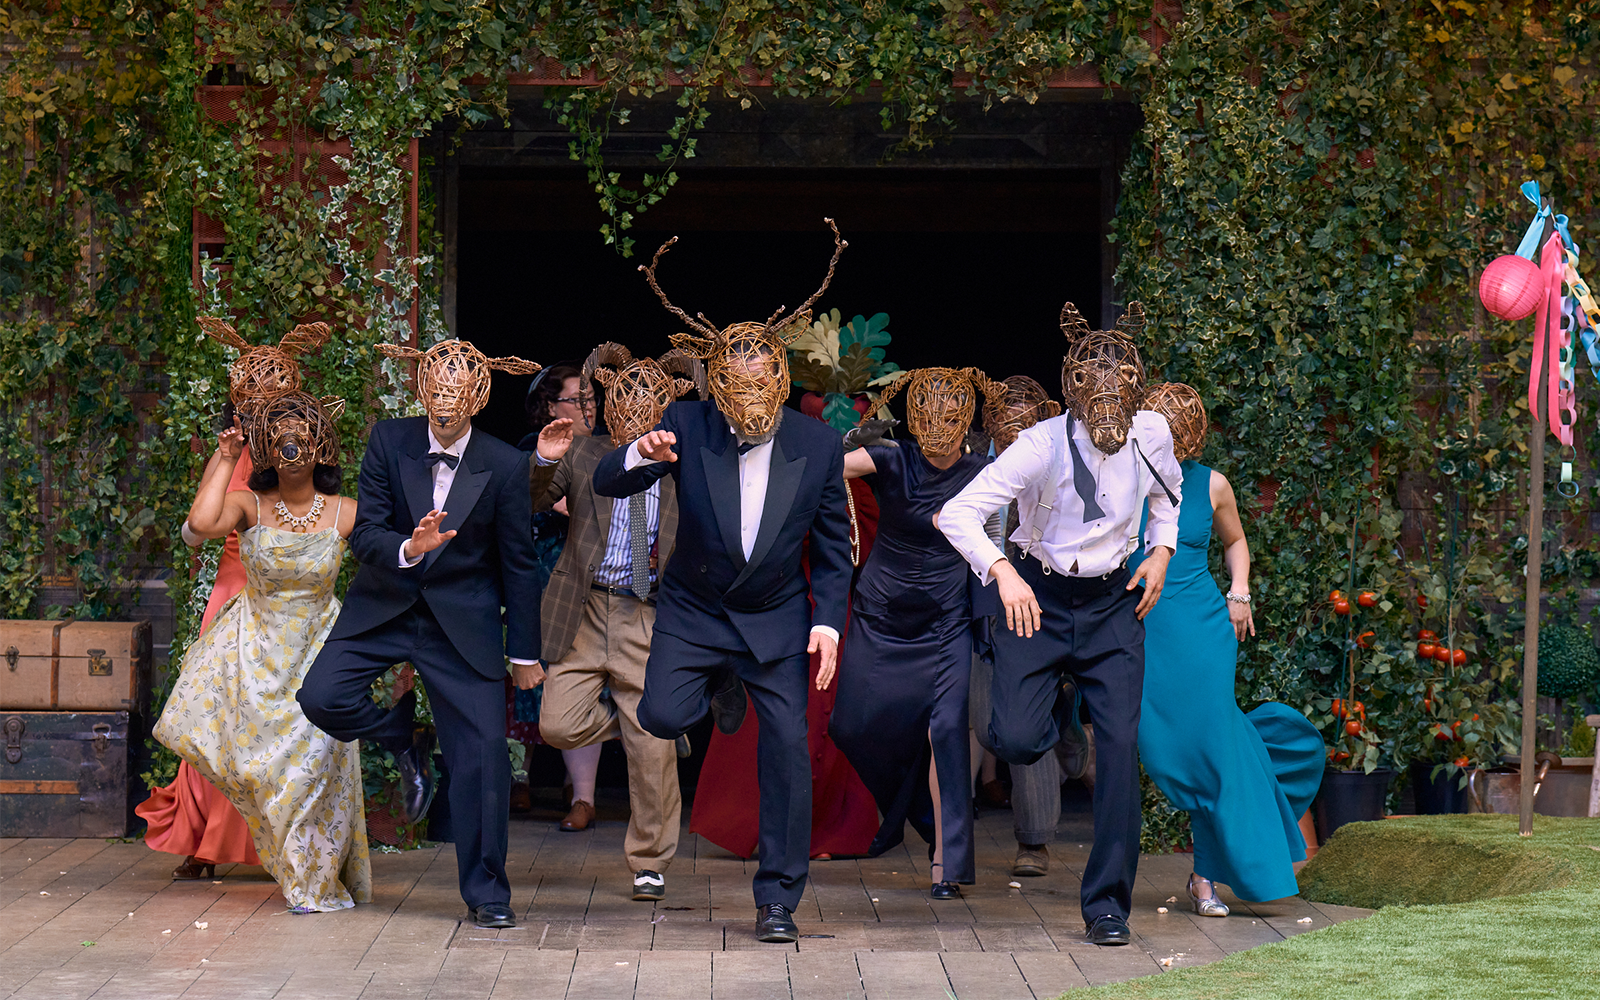 Group wearing wooden animal masks dancing